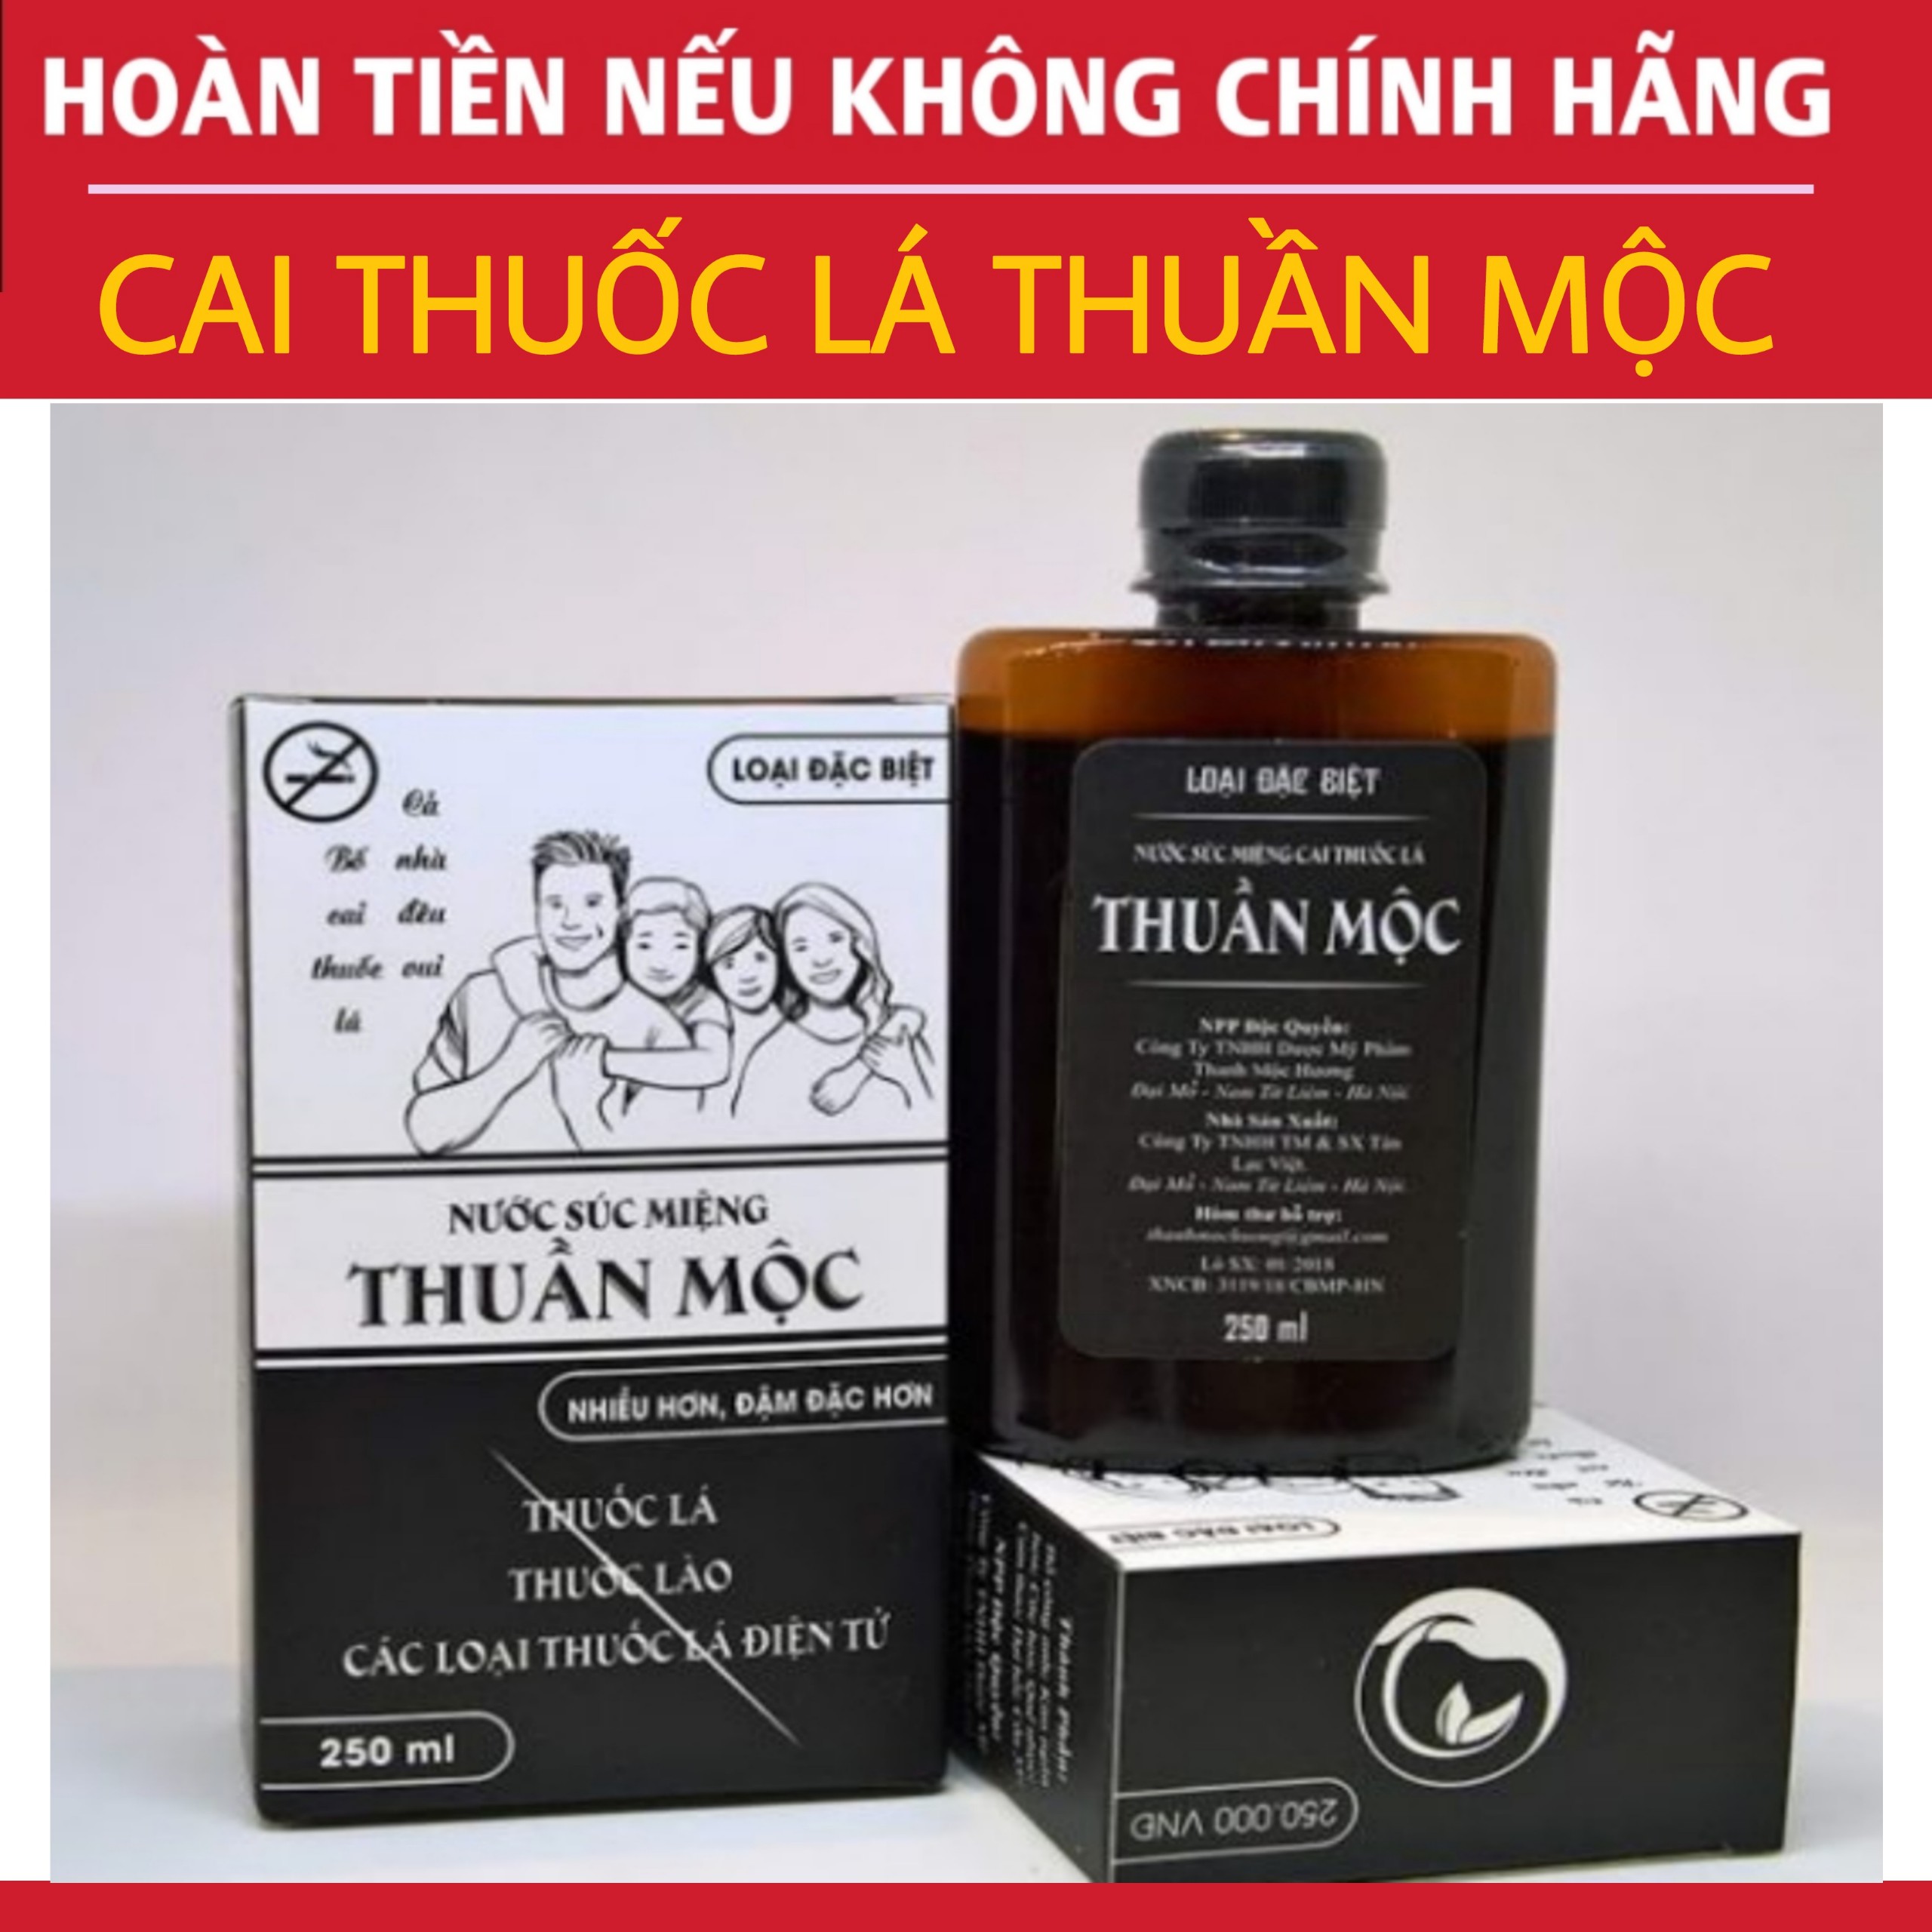 Nước súc miệng cai thuốc lá Thuần Mộc - Thanh Mộc Hương